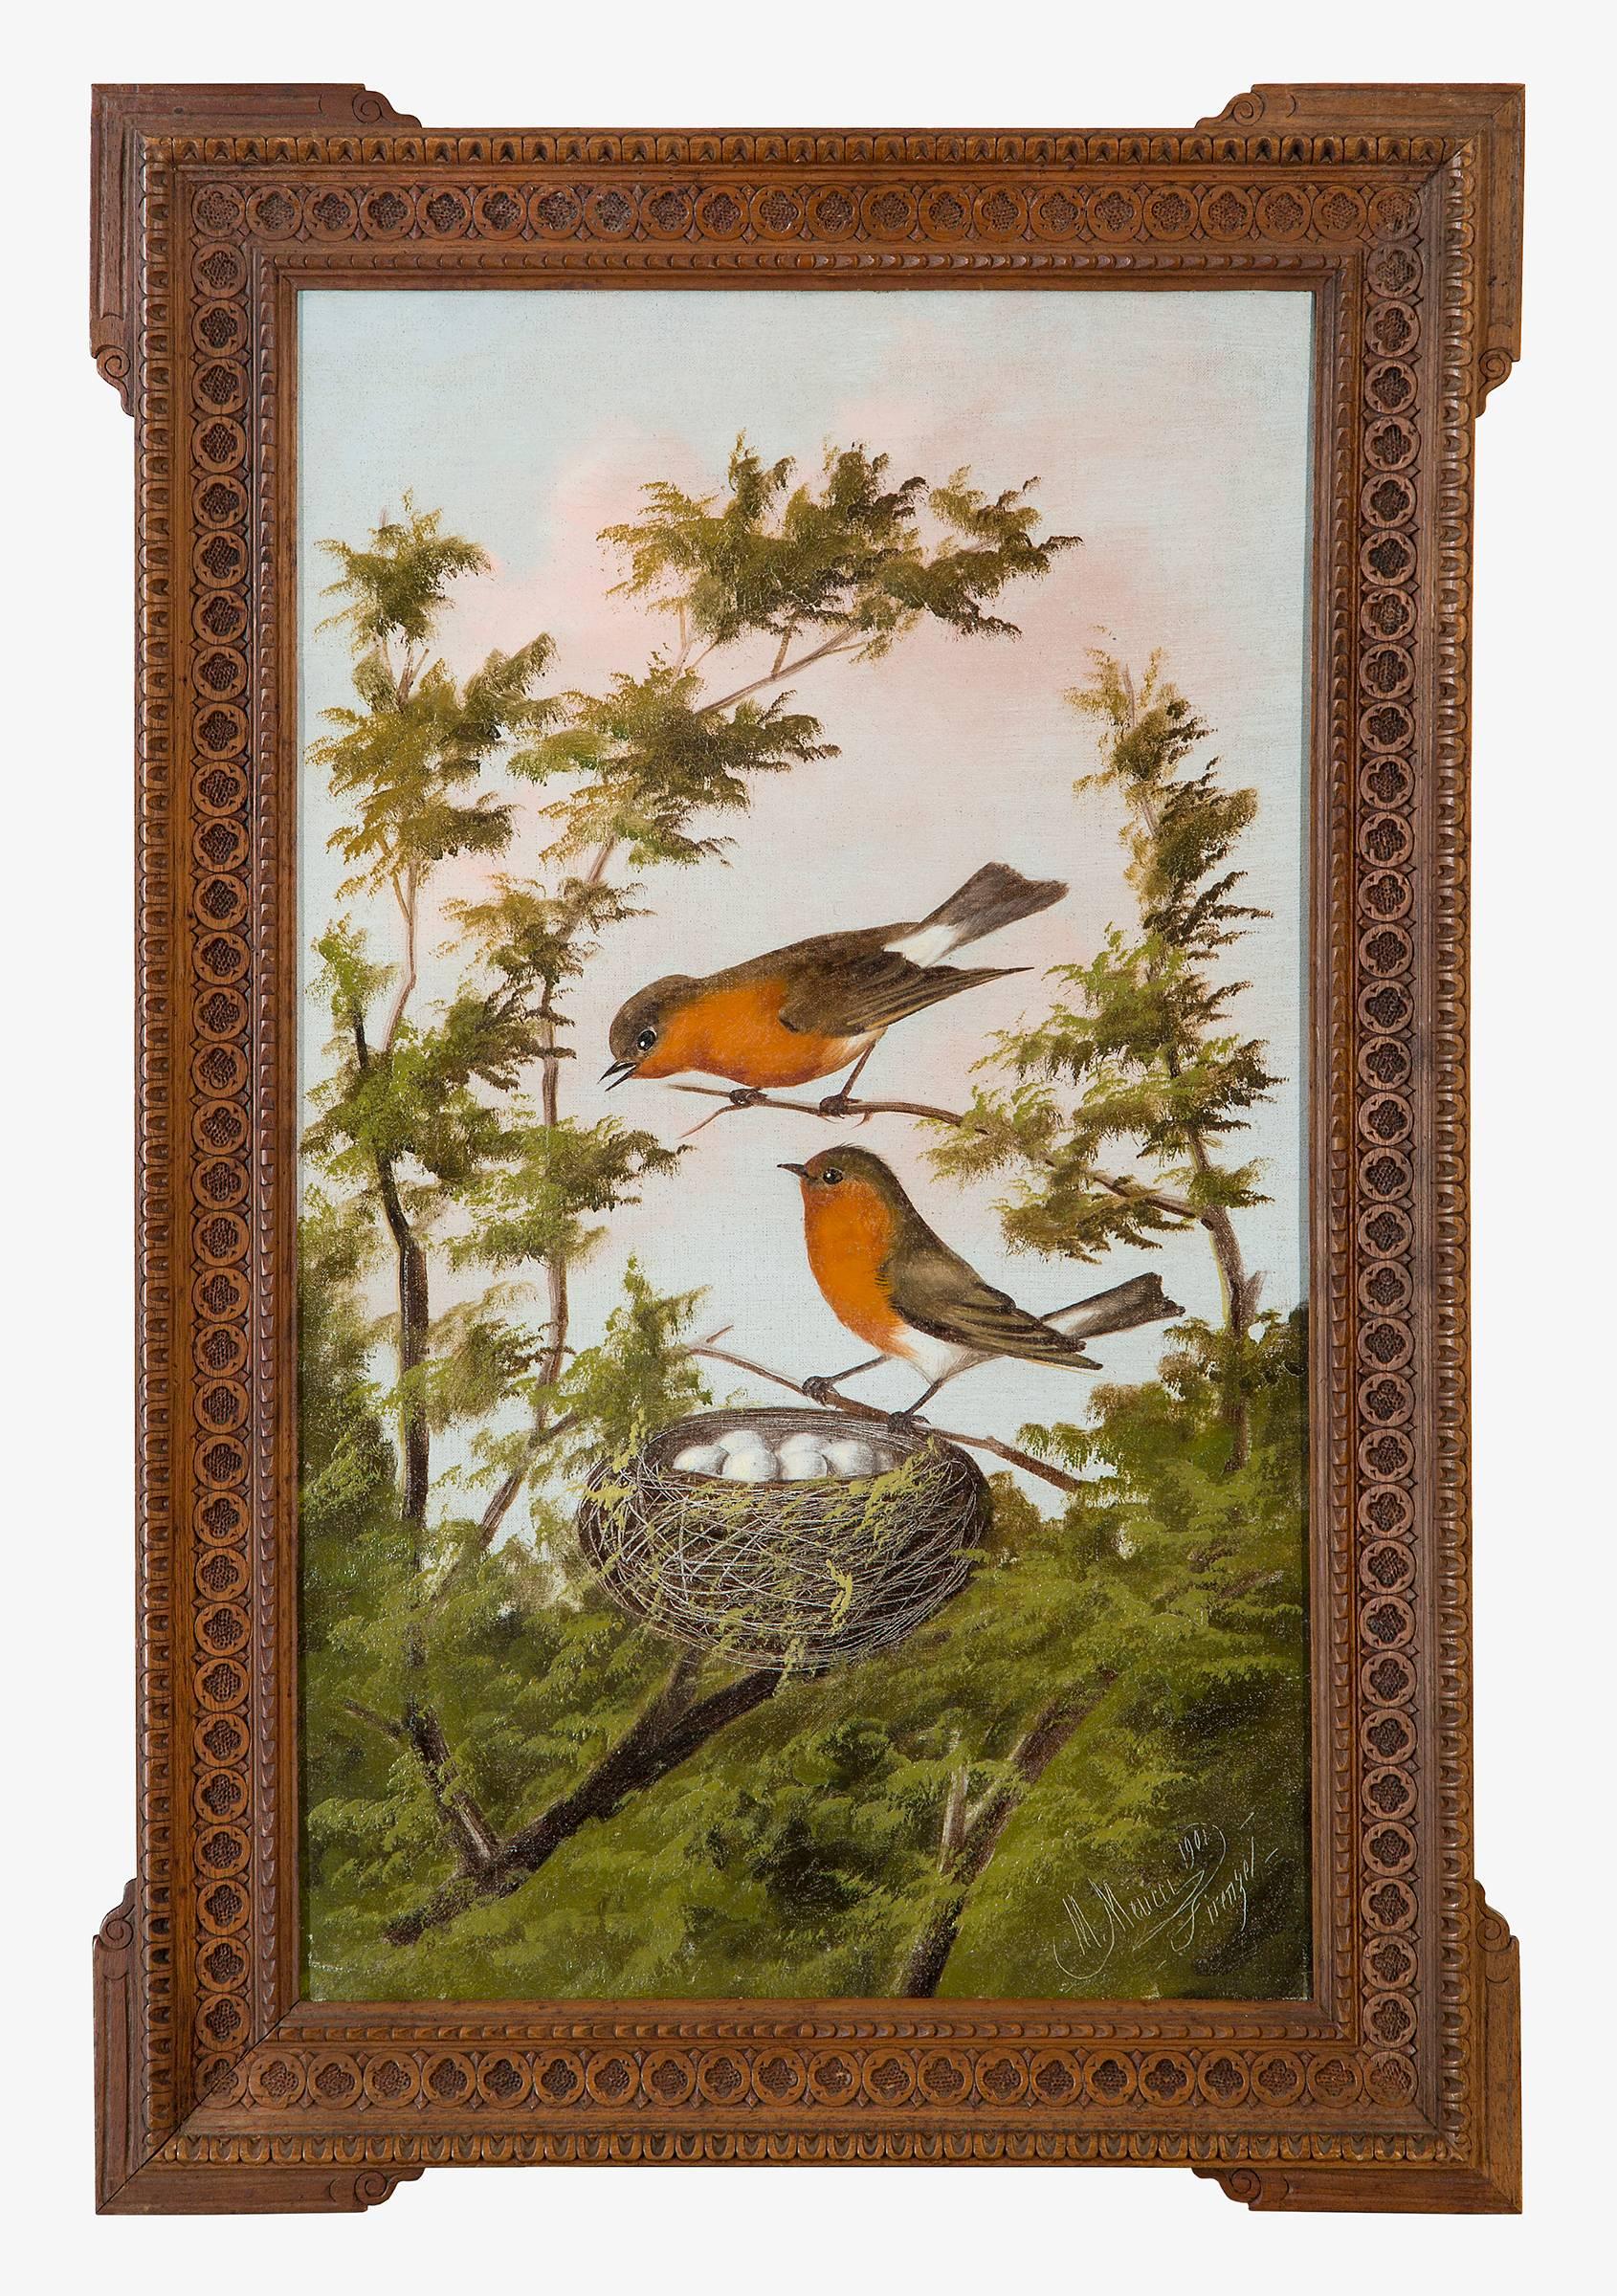 Goldfinch; Robins; und blaue Vögel – Painting von Michelangelo Meucci